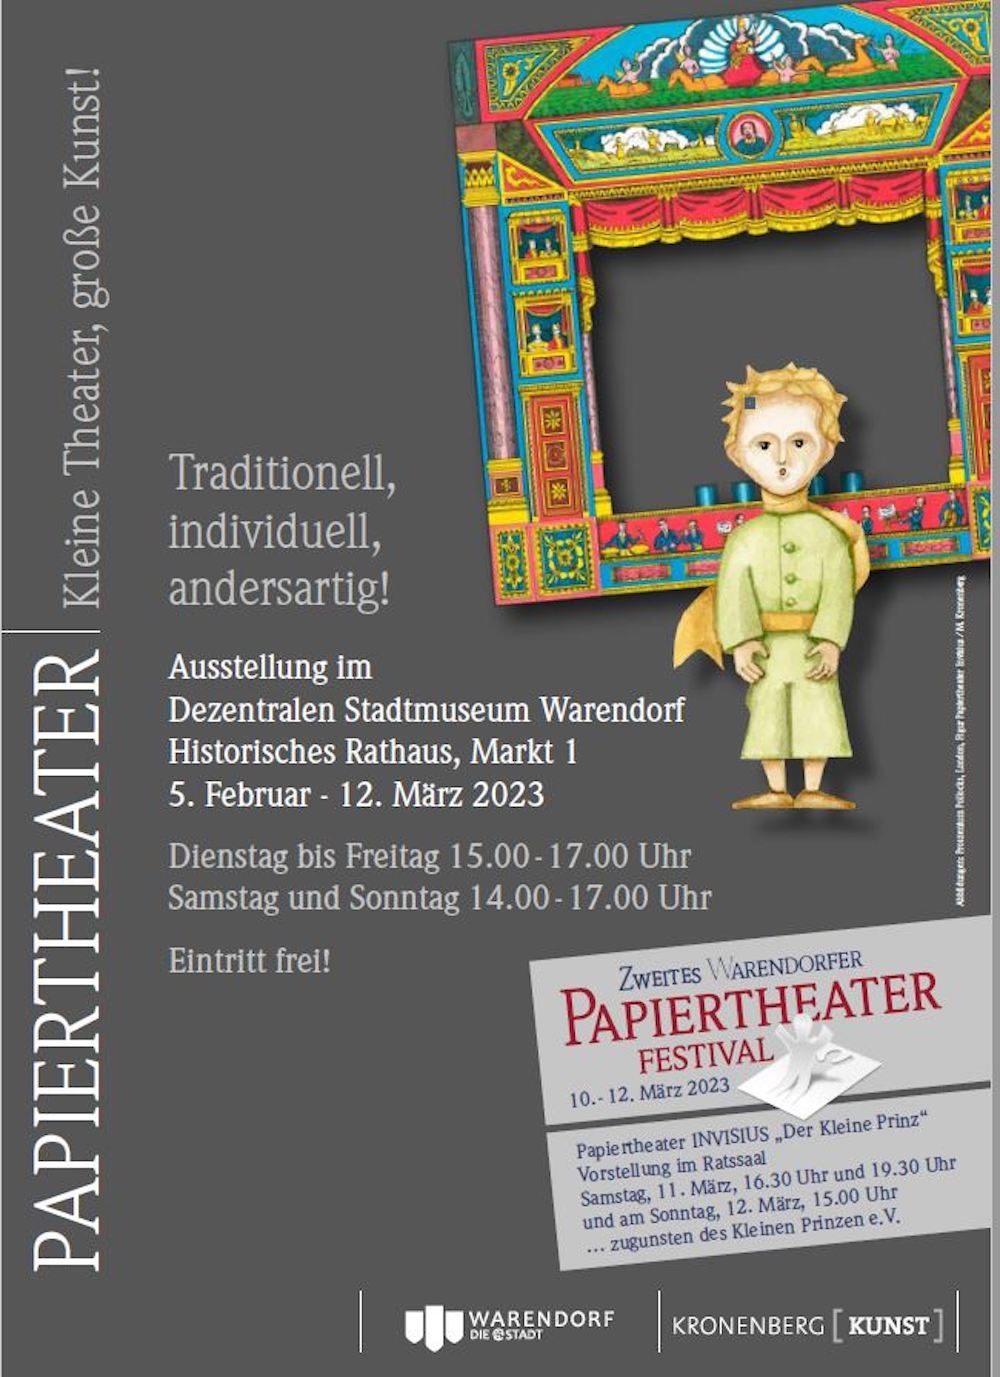 Zweites Warendorfer Papiertheaterfestival vom 10. bis 12. März 2023